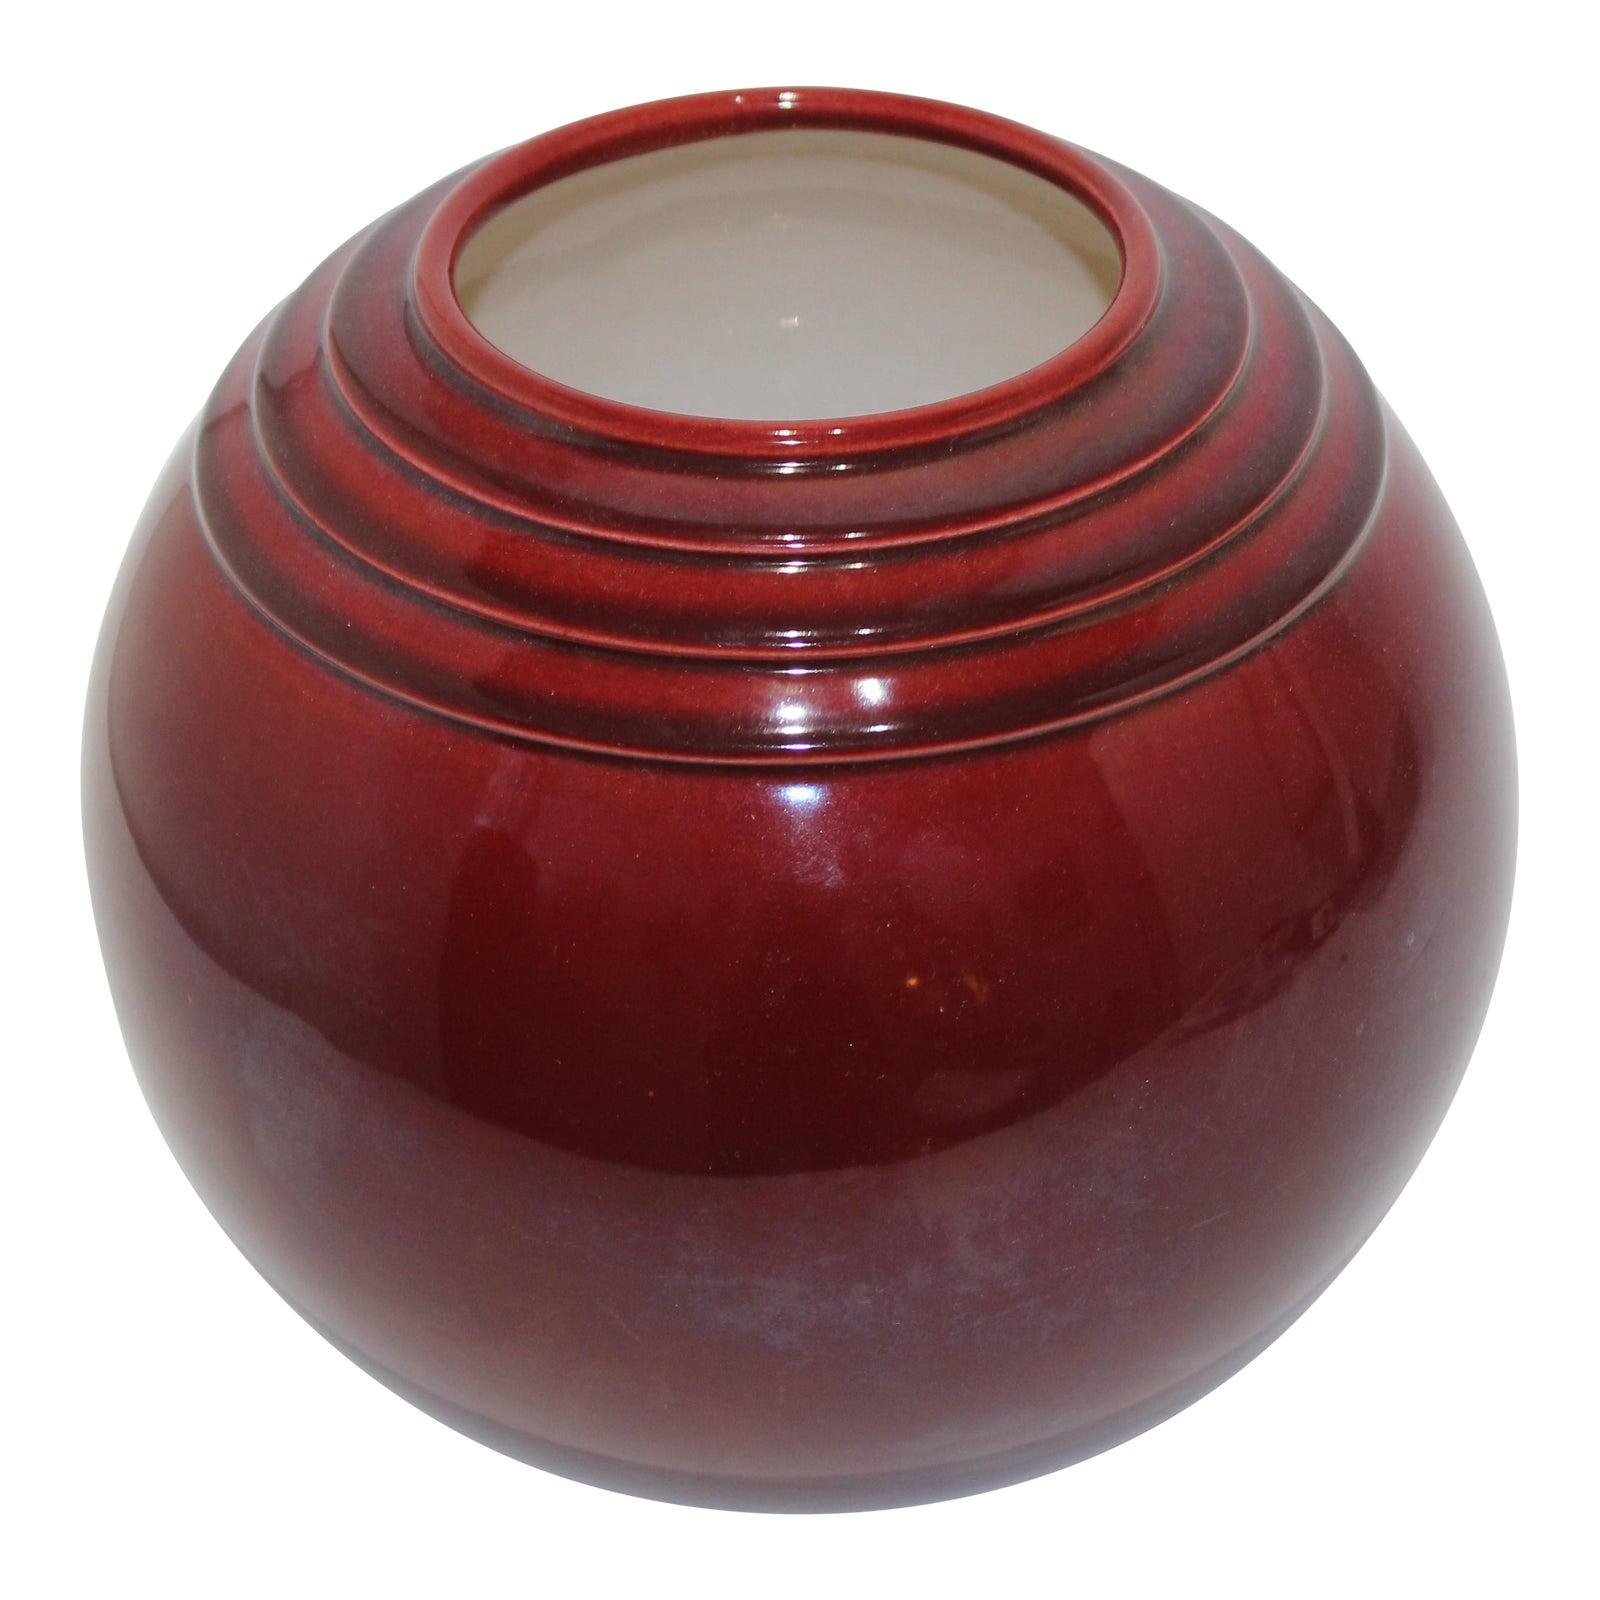 Glazed French Art Deco PM-Sevres Round Ceramic Vase